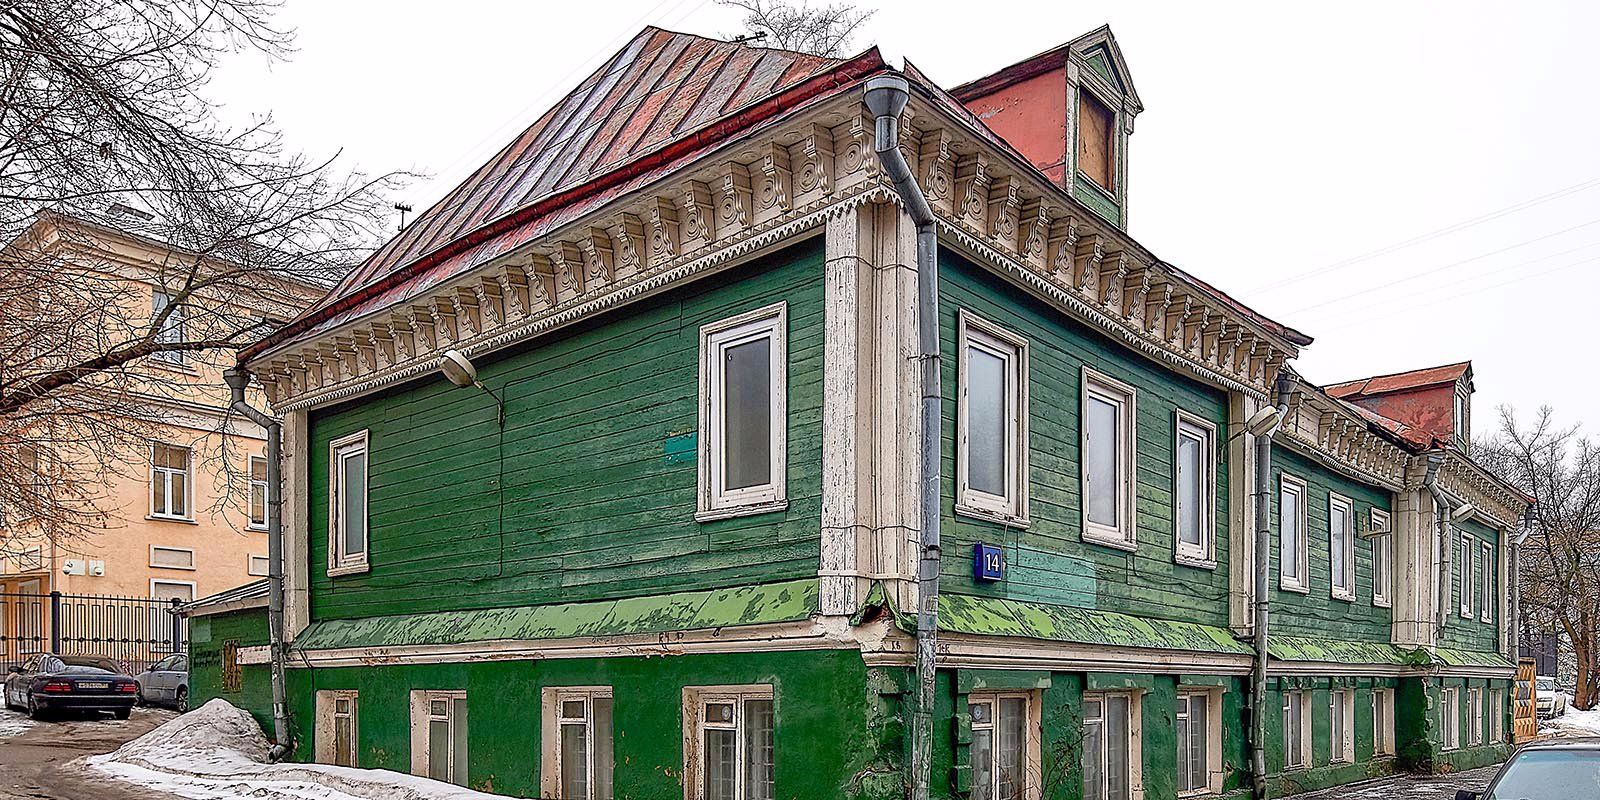 Власти Москвы признали зеленый дом с кокошником памятником архитектуры